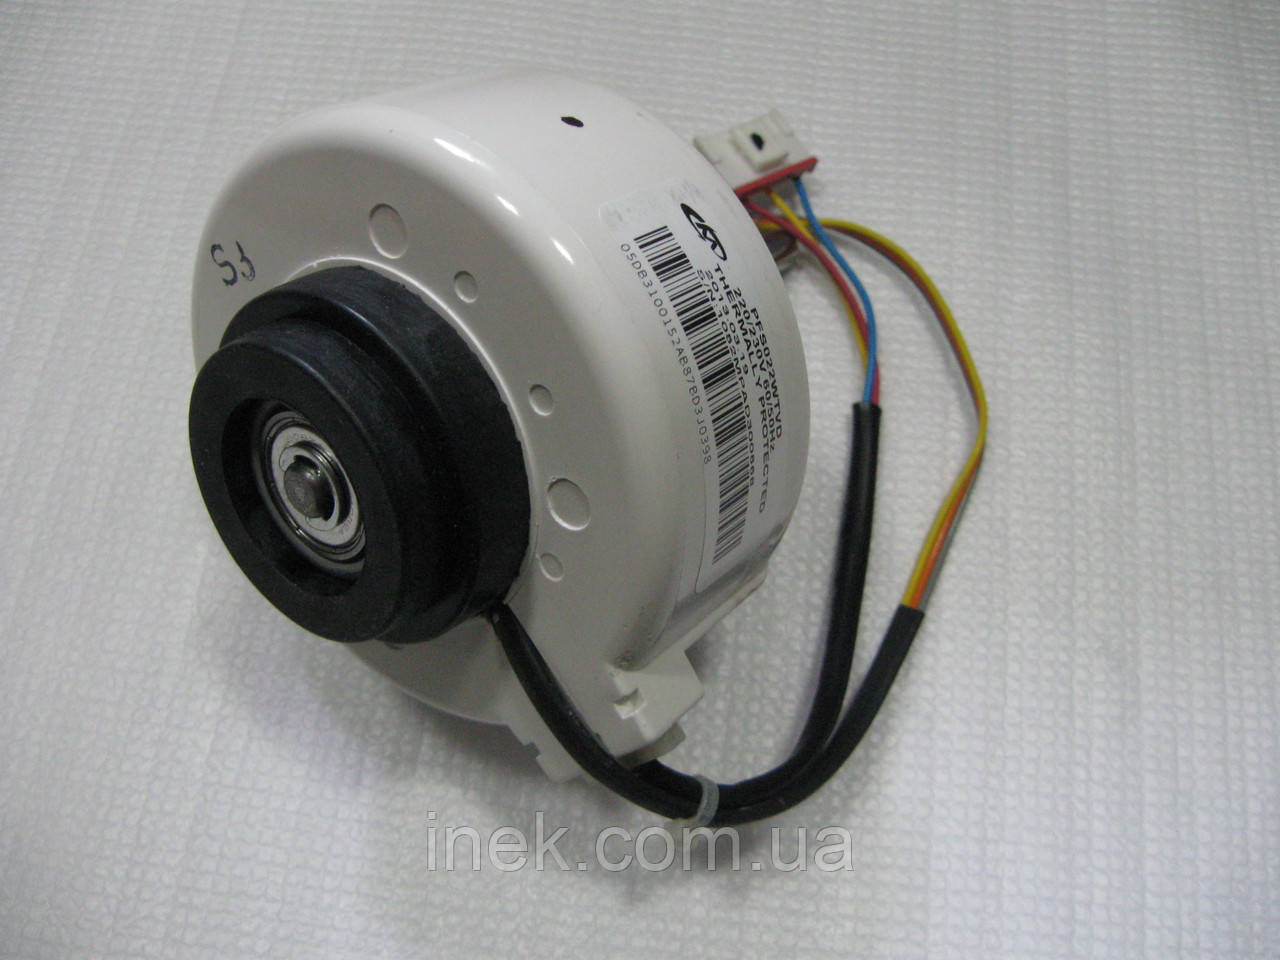 Мотор вентилятора внутрішнього блока кондиціонера Samsung DB31-00152A